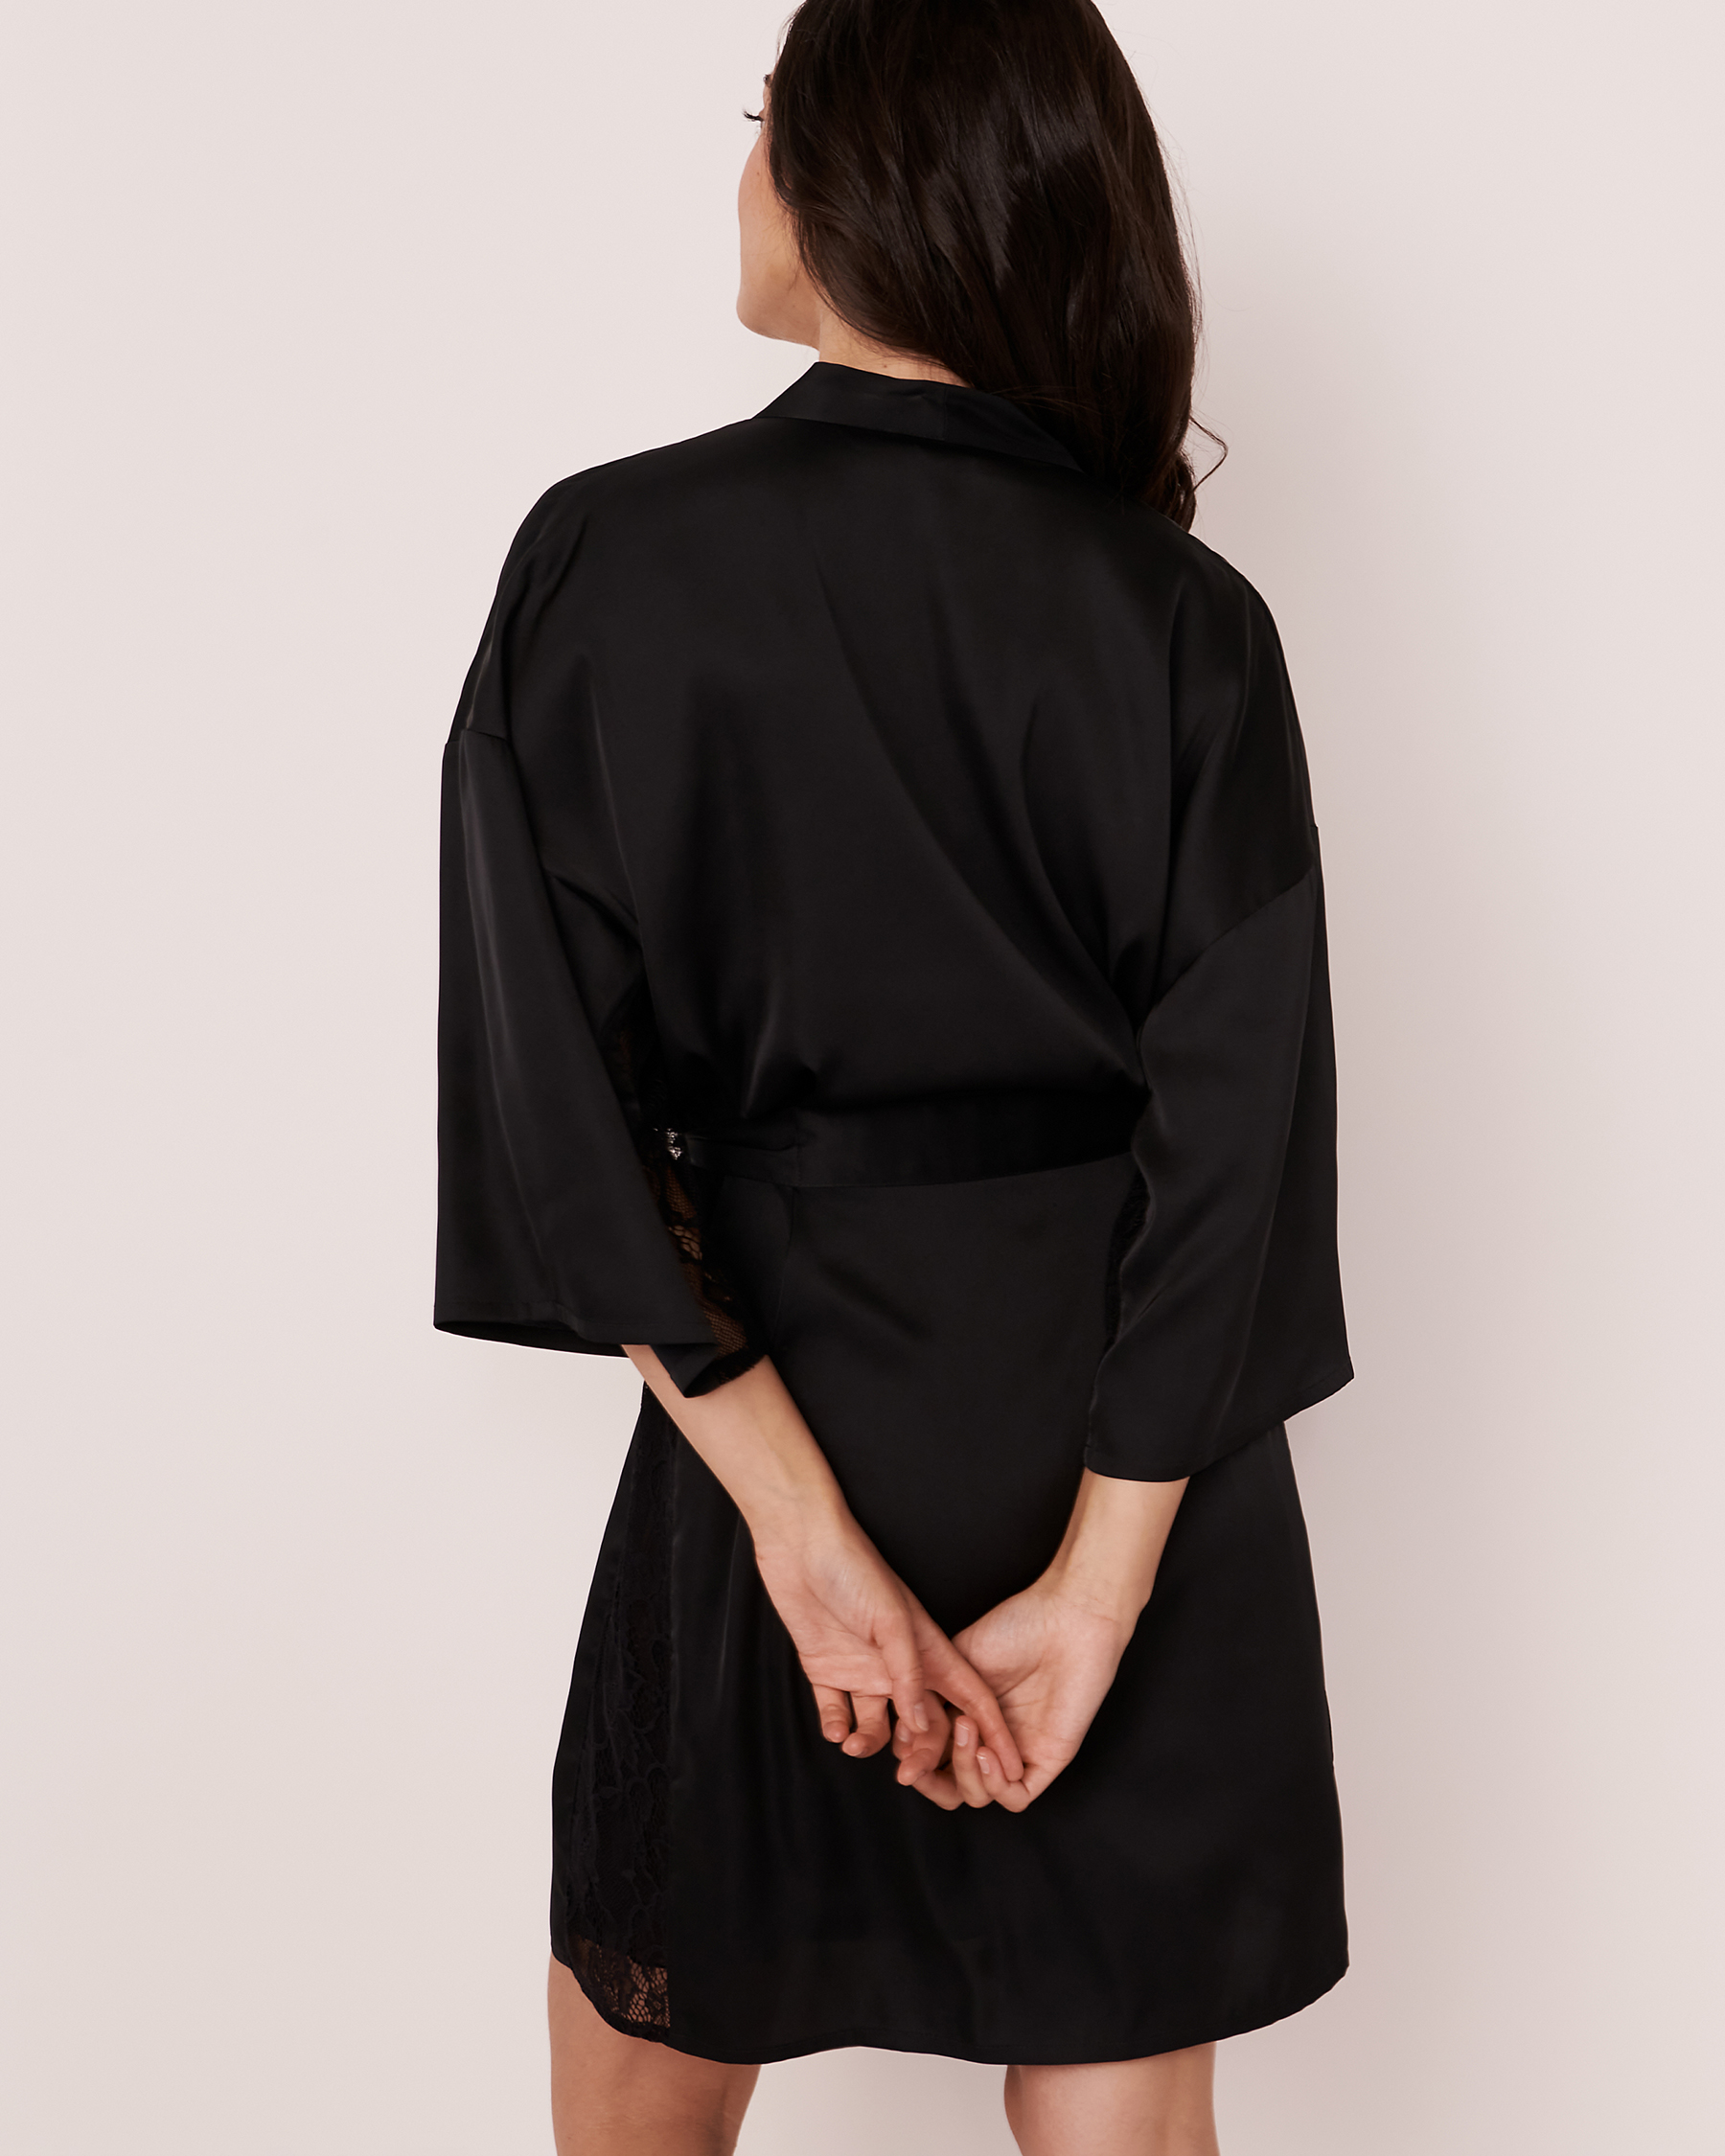 LA VIE EN ROSE Satin and Lace Kimono Black 60600014 - View2